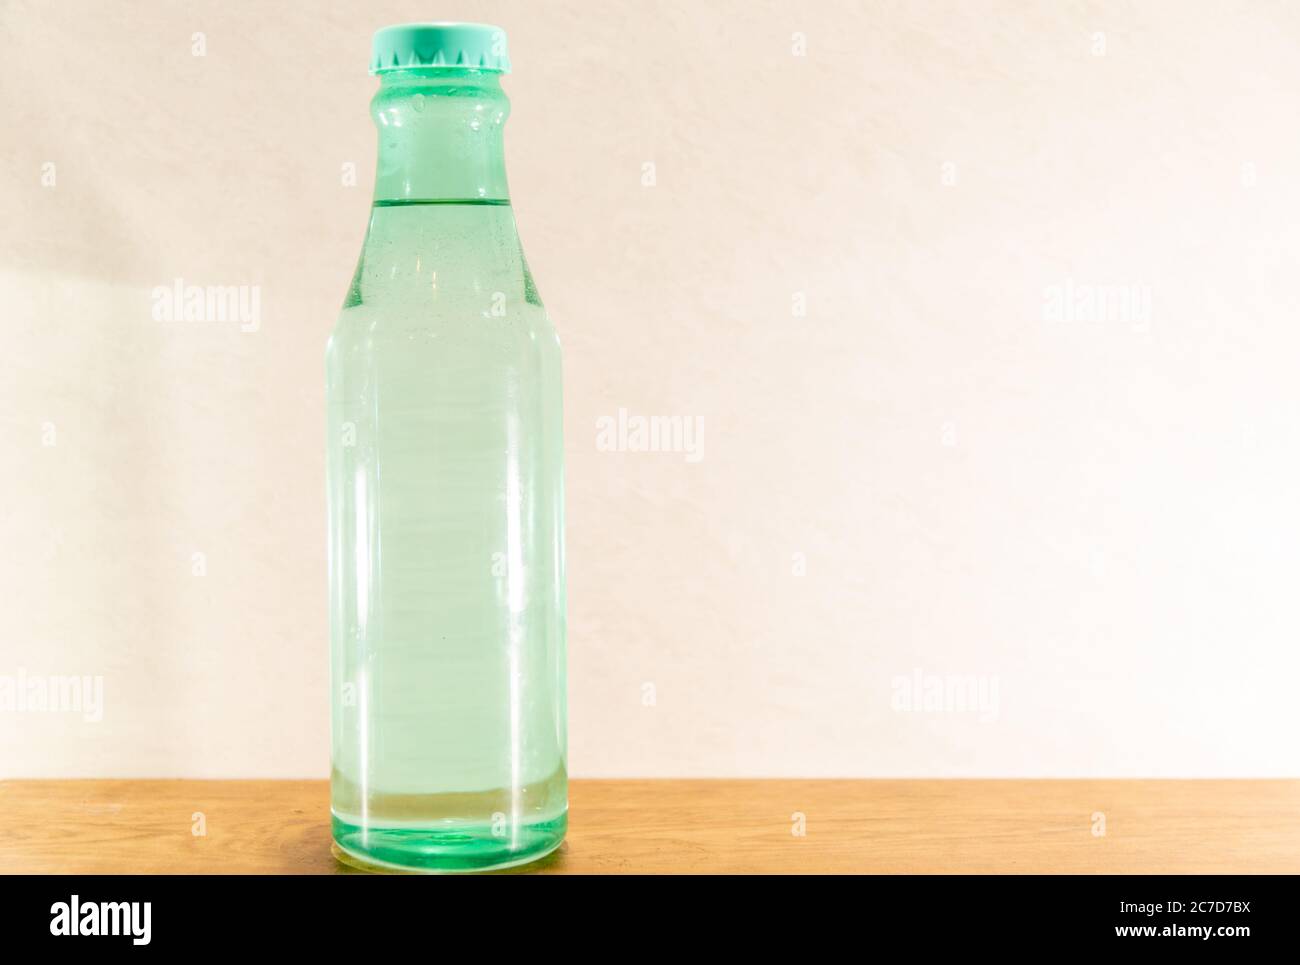 Bunte und dekorative Glasflaschen. Dekorierte Flaschen können immer noch  eine ausgezeichnete Alternative sein, um zusätzliches Einkommen zu  generieren. Kunsthandwerk und Haushaltswaren Stockfotografie - Alamy